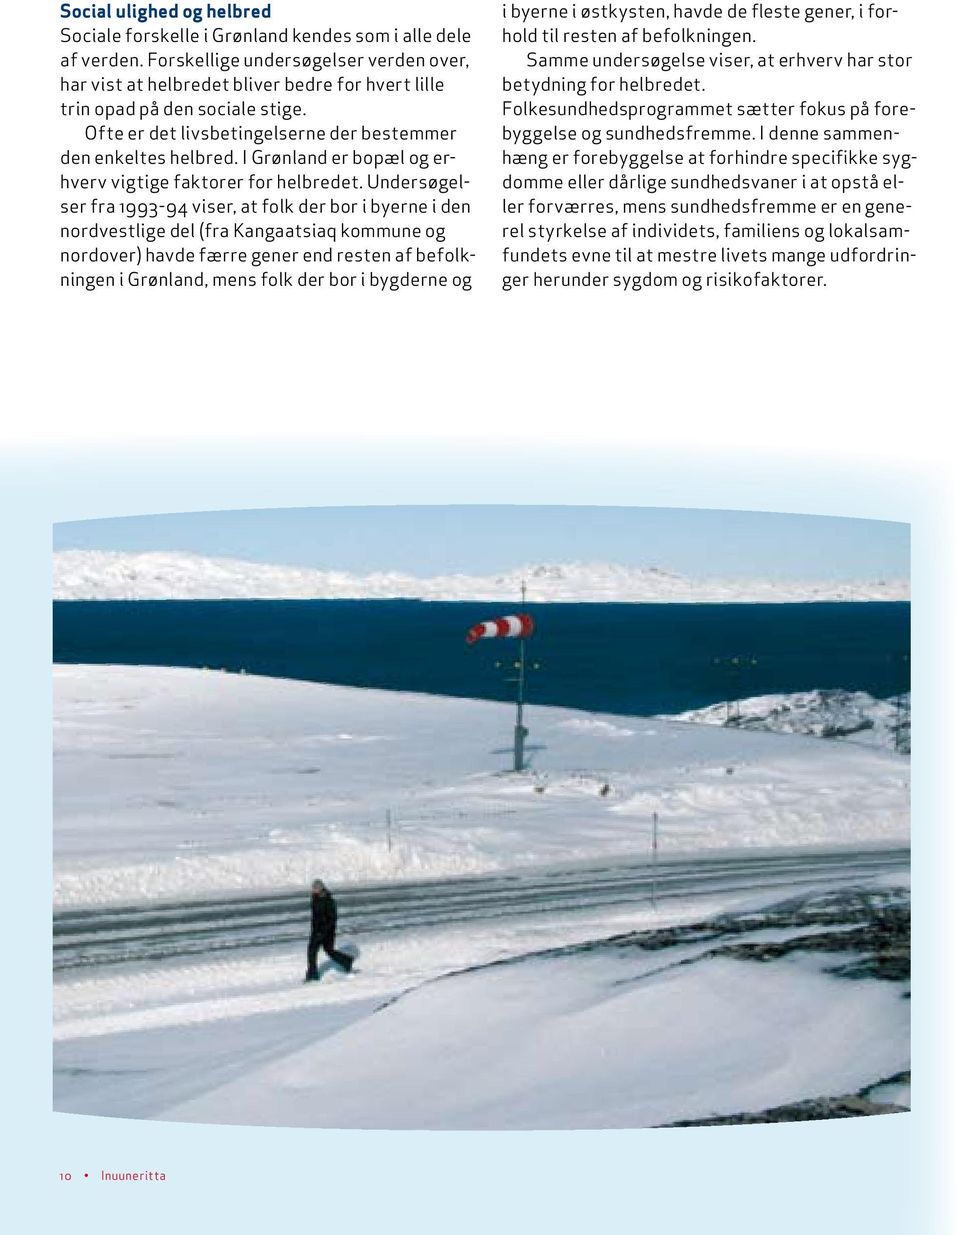 I Grønland er bopæl og erhverv vigtige faktorer for helbredet.